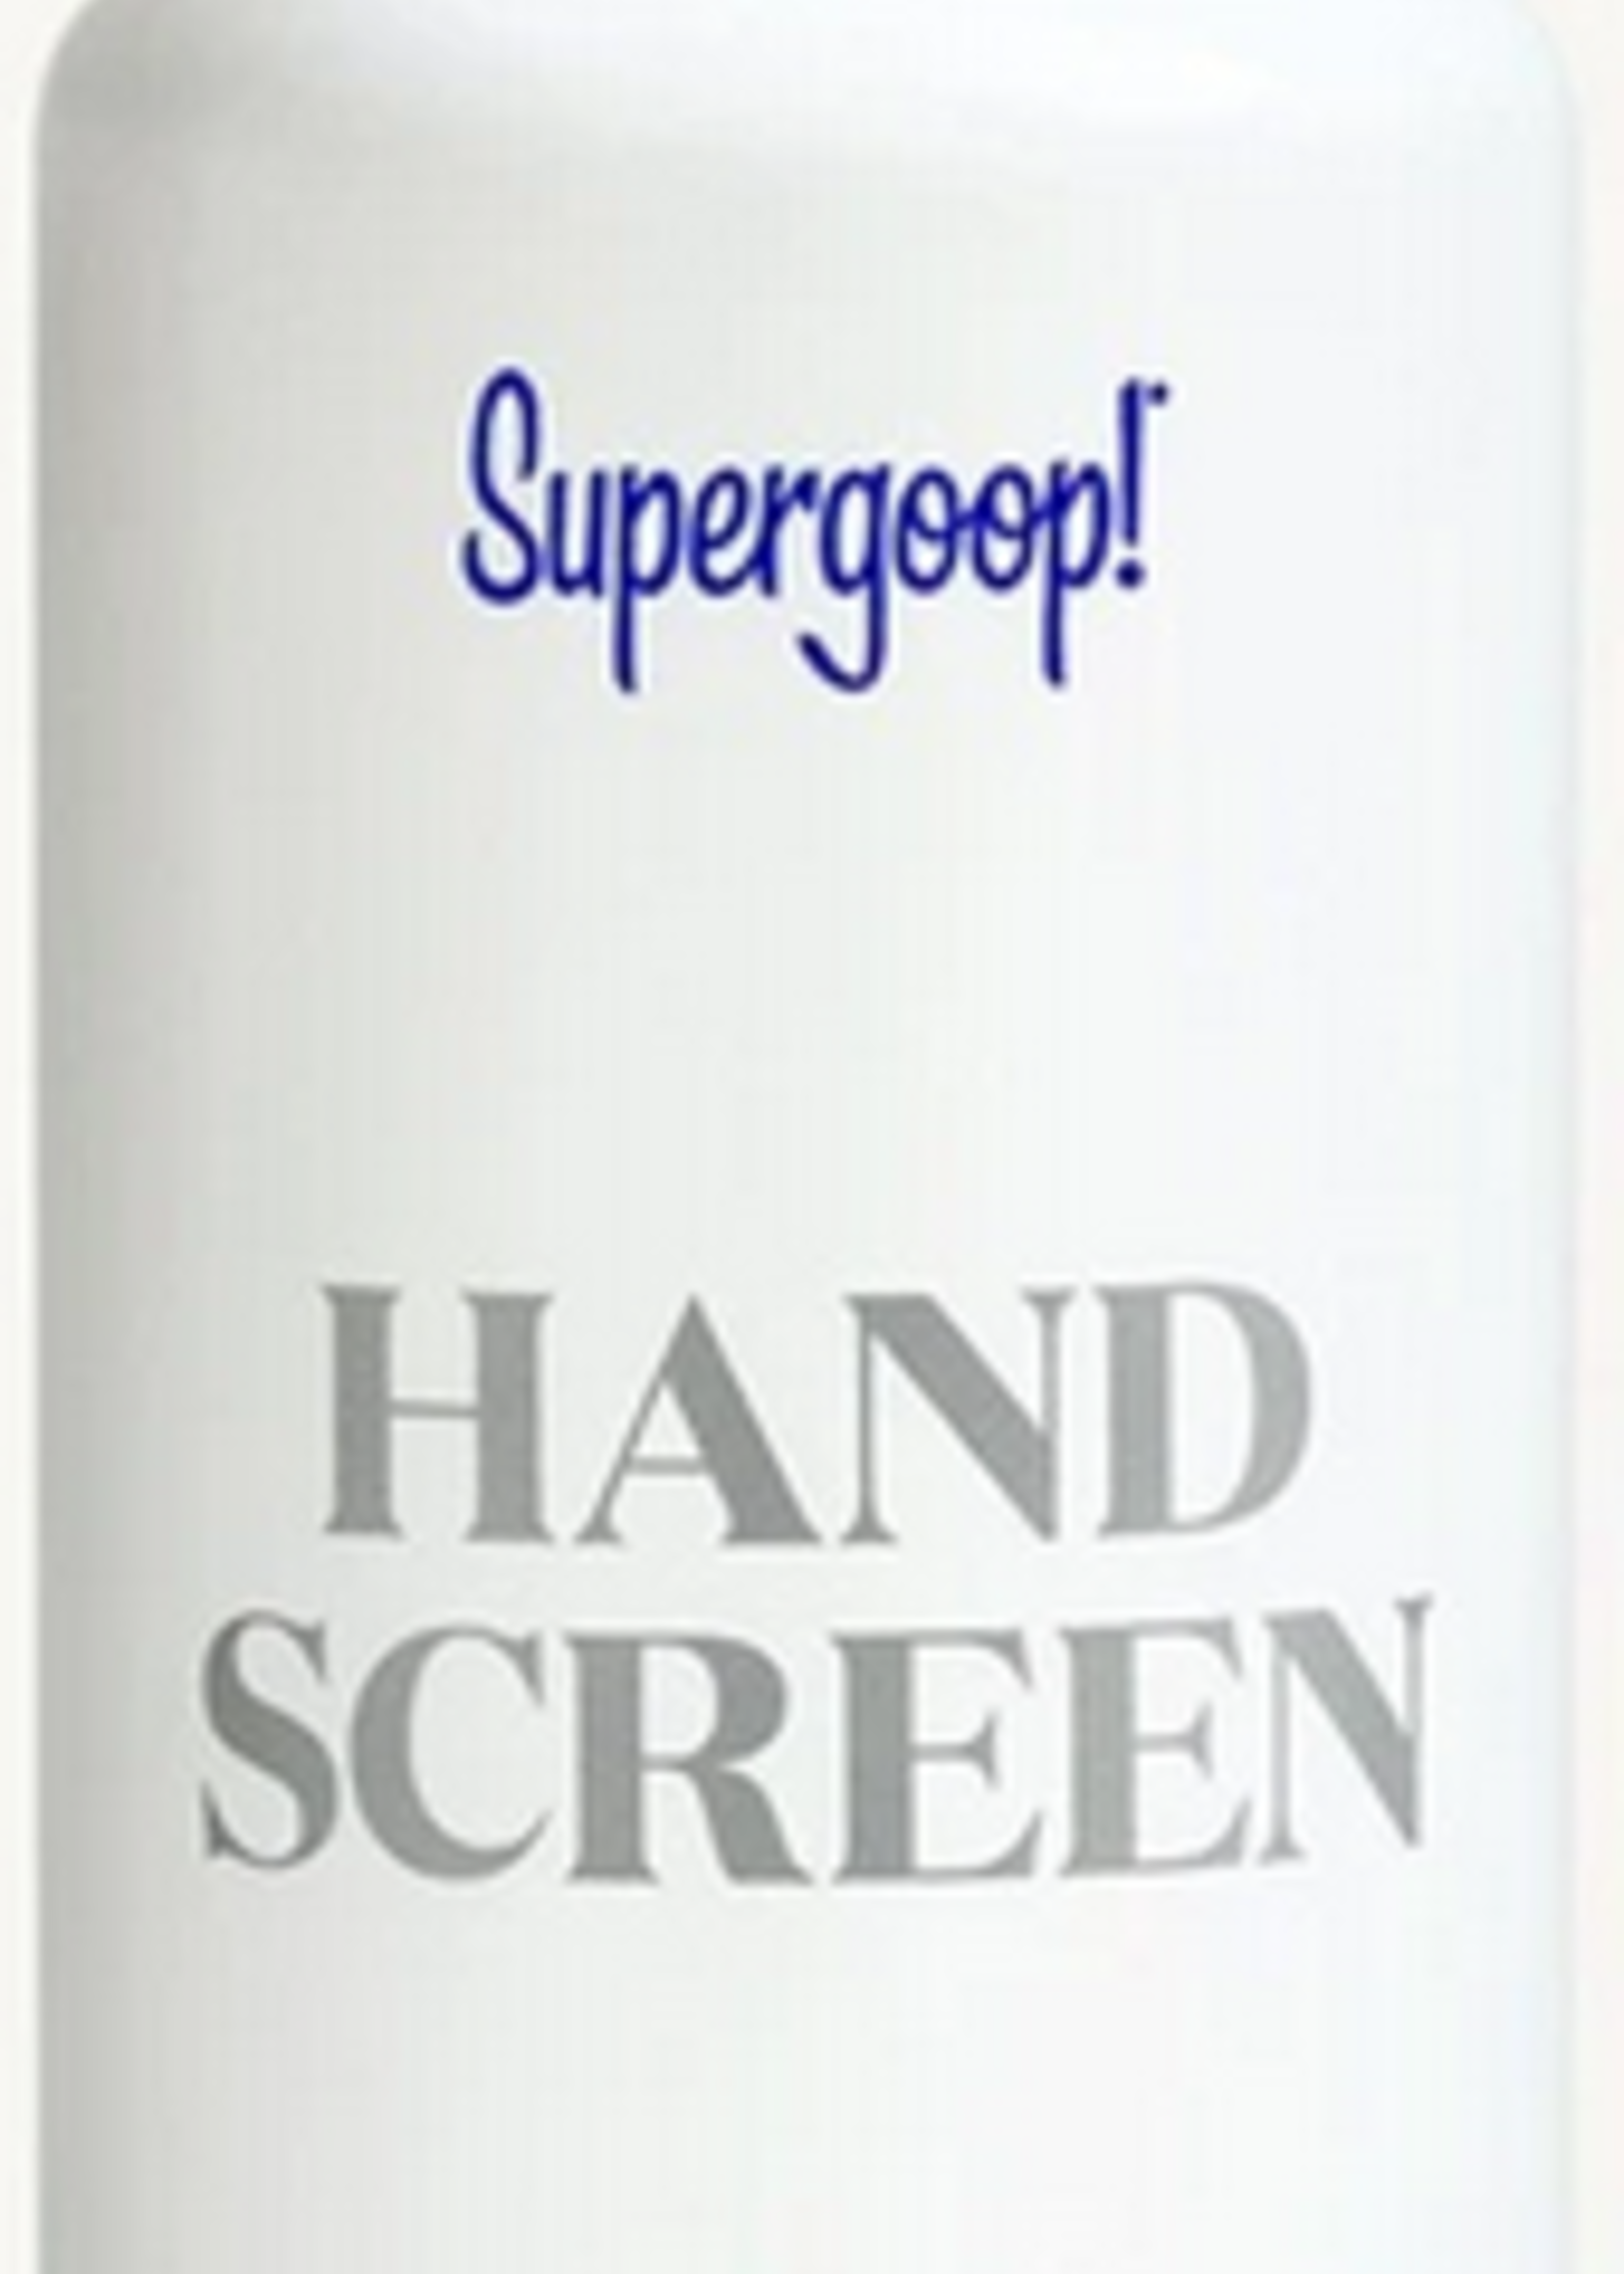 Handscreen SPF 40